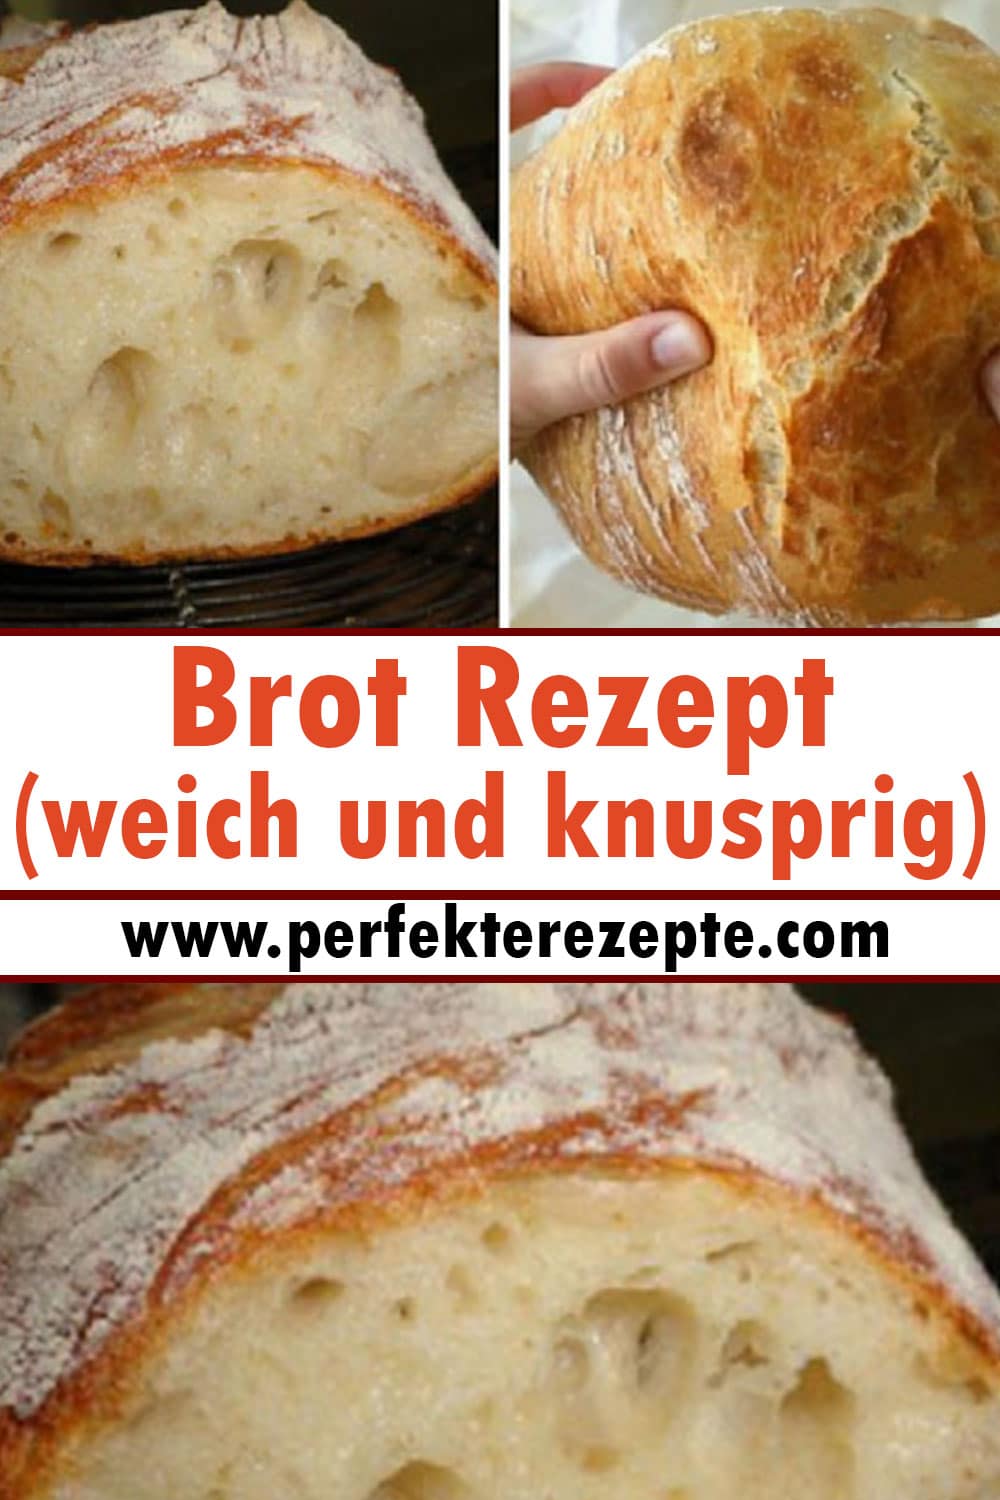 Brot Rezept (weich und knusprig)